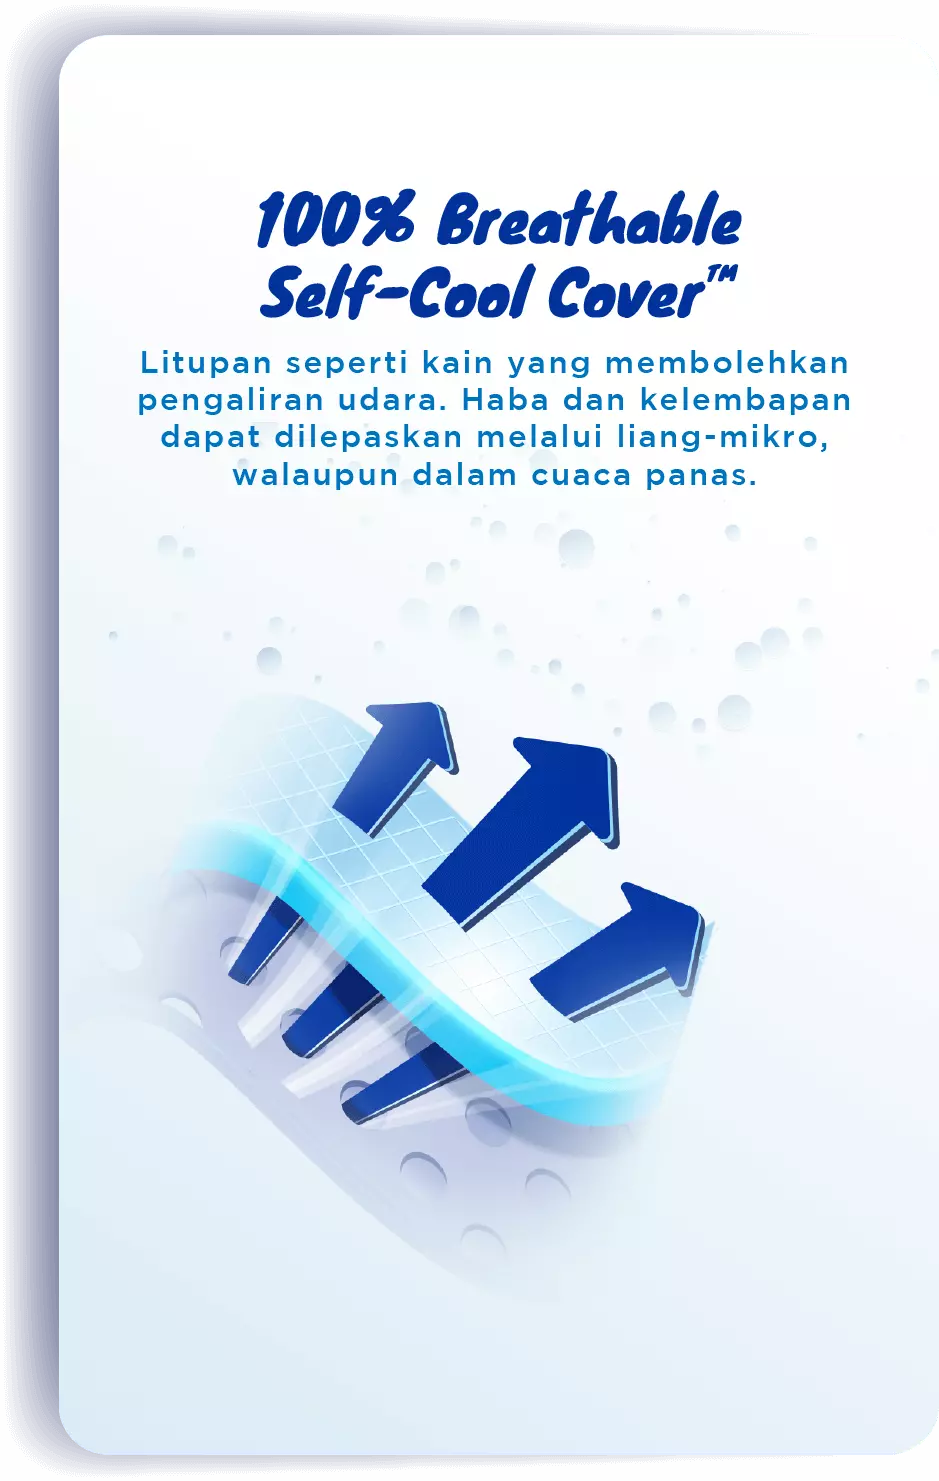 100% Breathable Self-cool Cover™: Litupan seperti kain yang membolehkan pengaliran udara. Haba dan kelembapan dapat dilepaskan melalui liang-mikro, walaupun dalam cuaca panas.